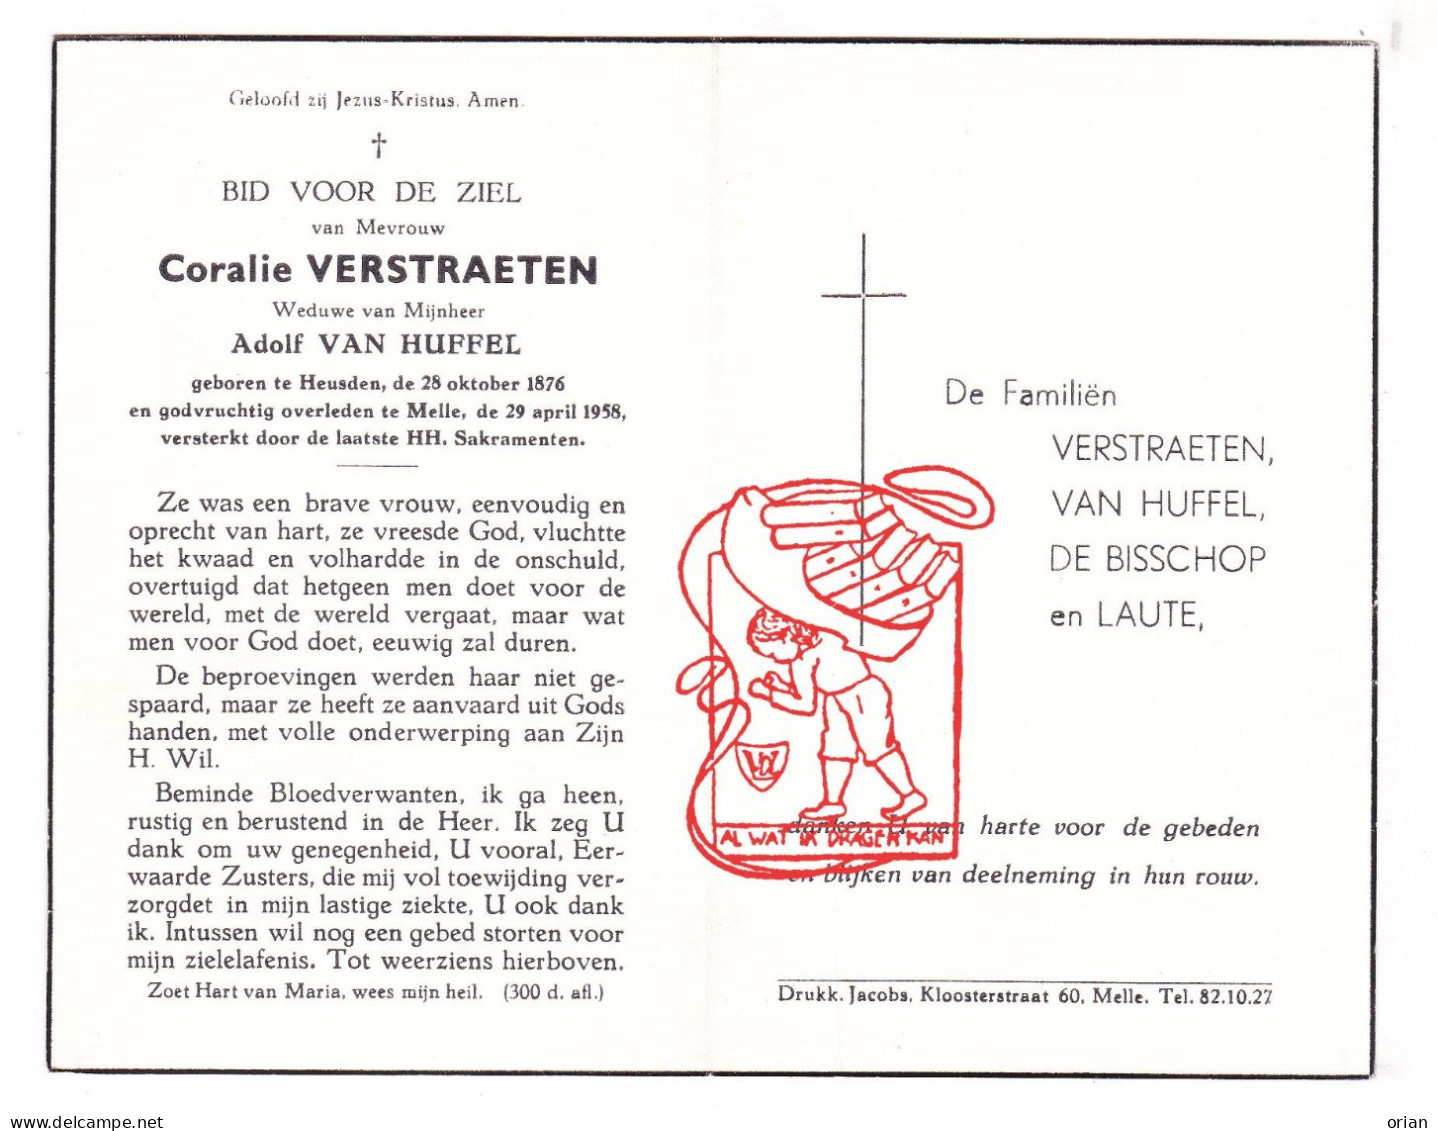 DP Coralie Verstraeten ° Heusden 1876 † Melle 1958 X Adolf Van Huffel // De Bisschop Laute - Devotion Images